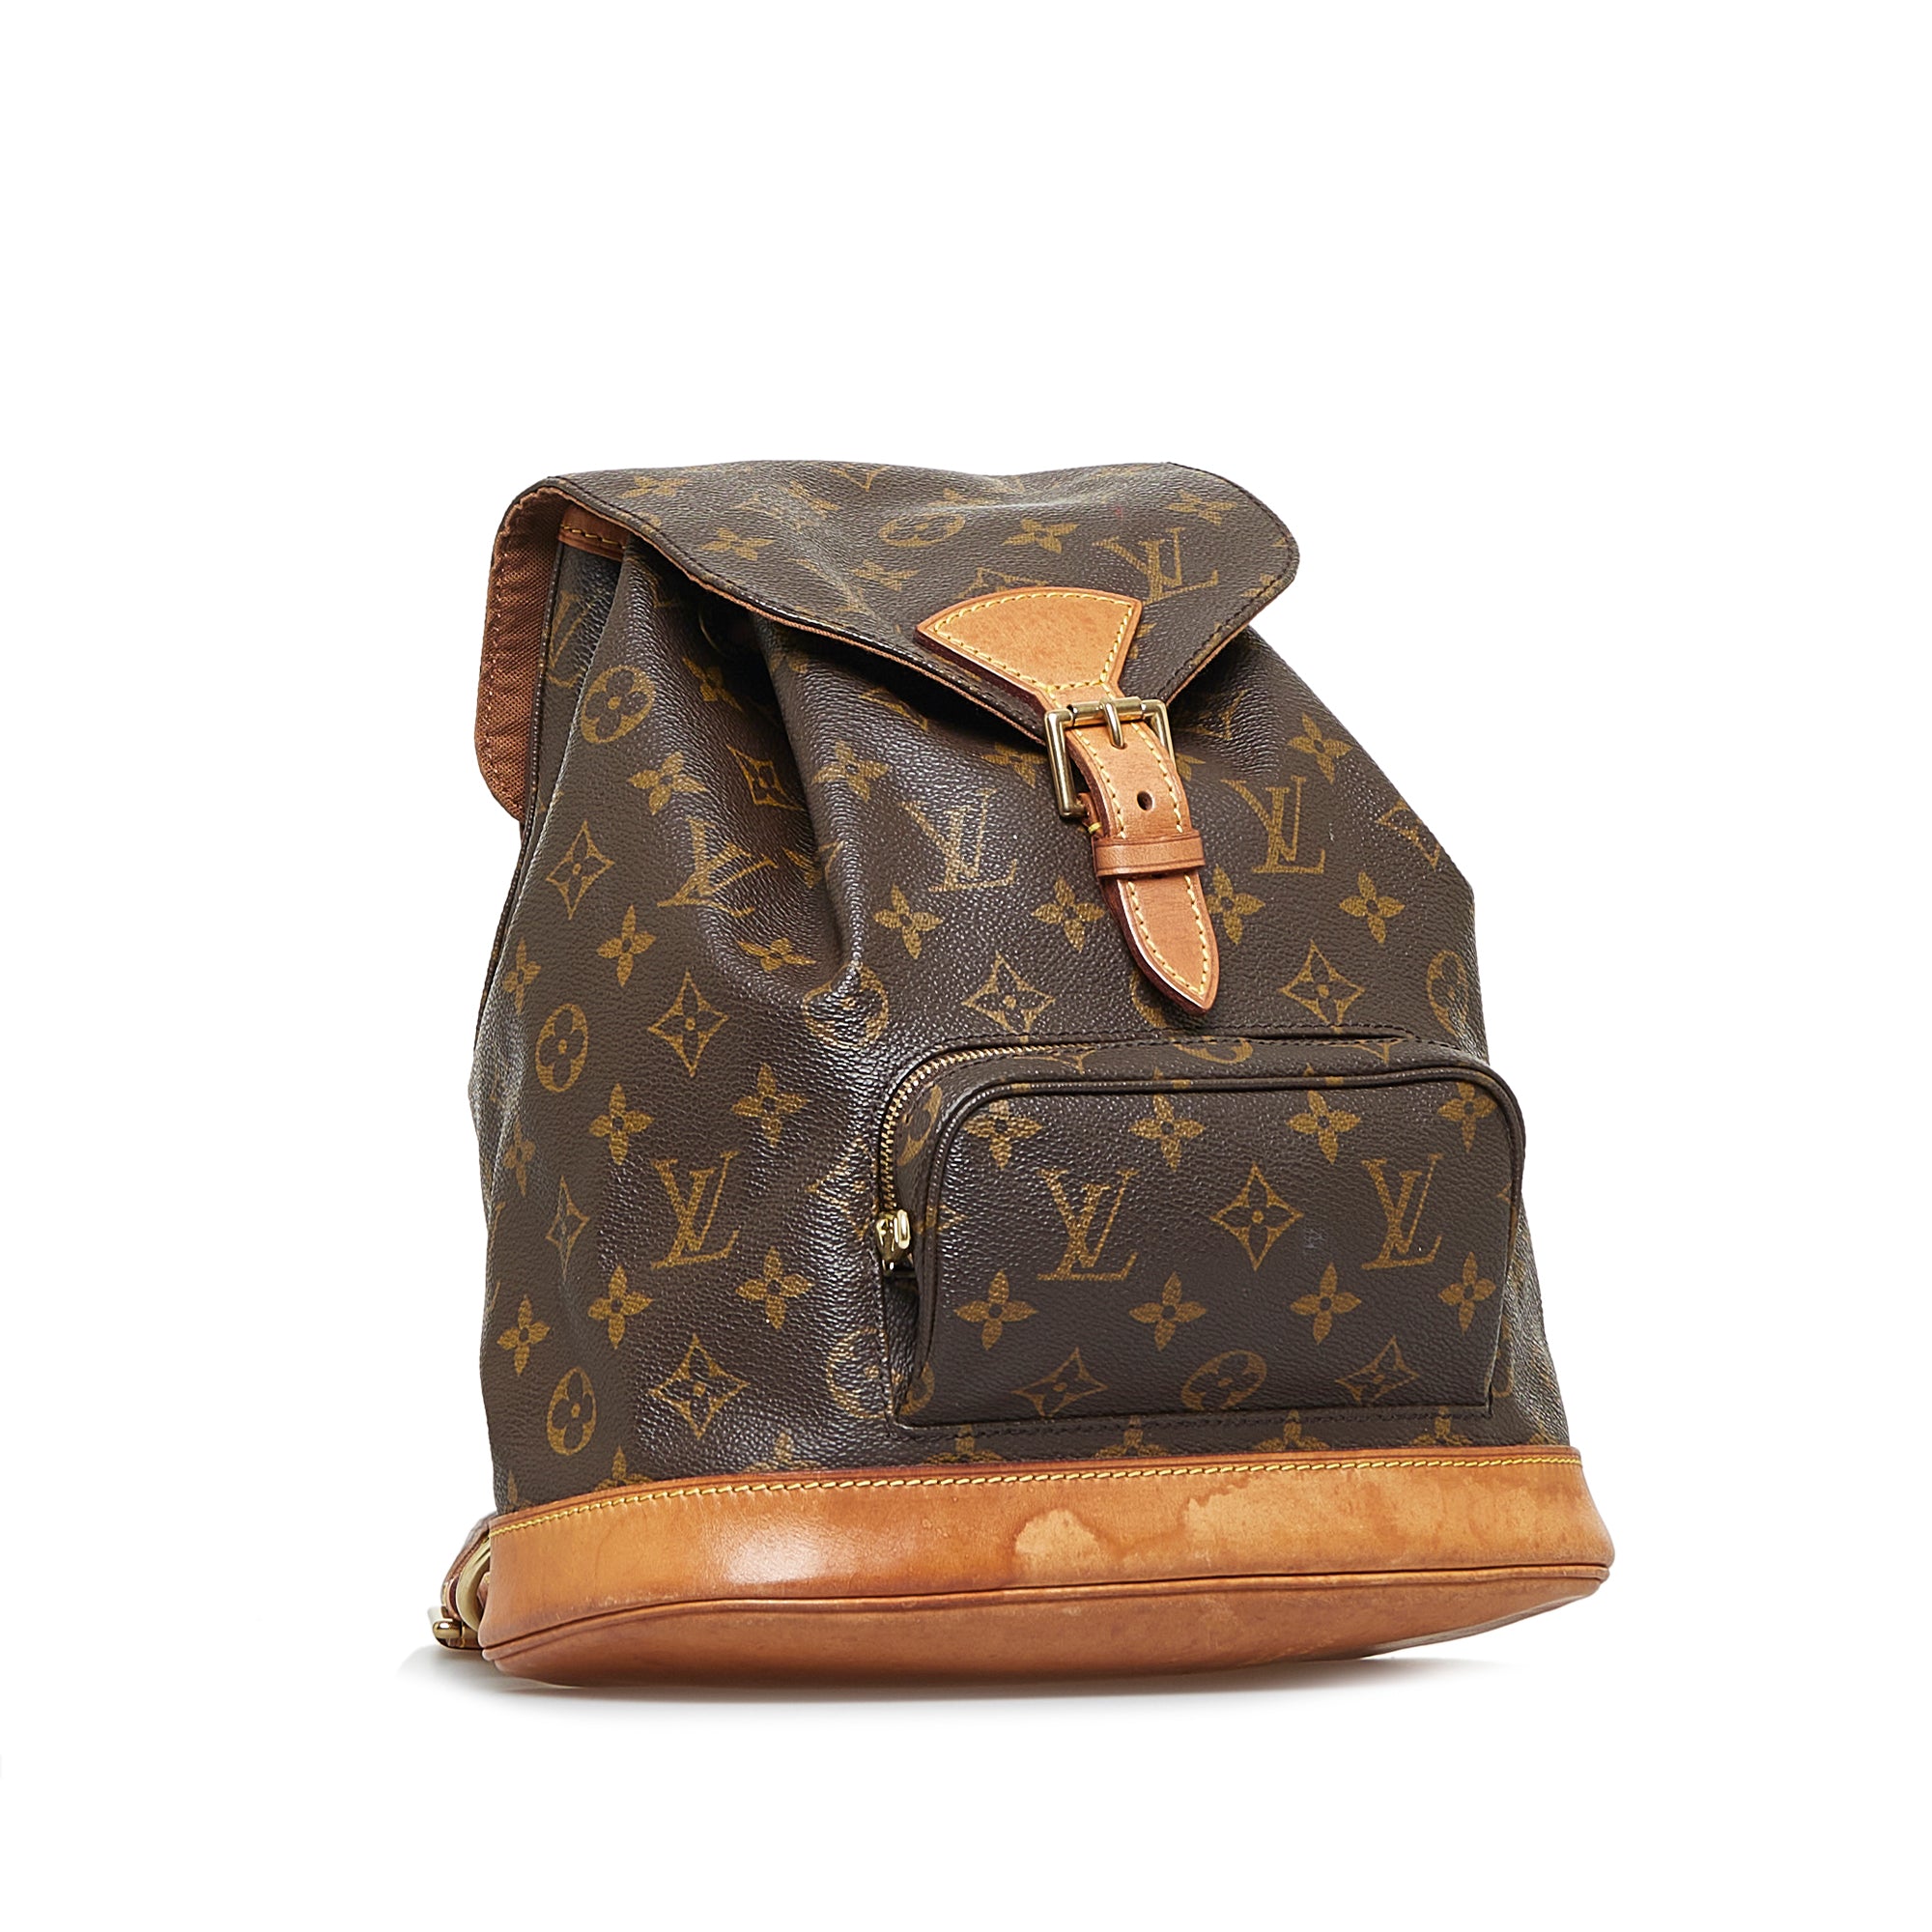 Louis Vuitton Montsouris backpack  Louis vuitton backpack, Louis vuitton,  Designer backpack purse